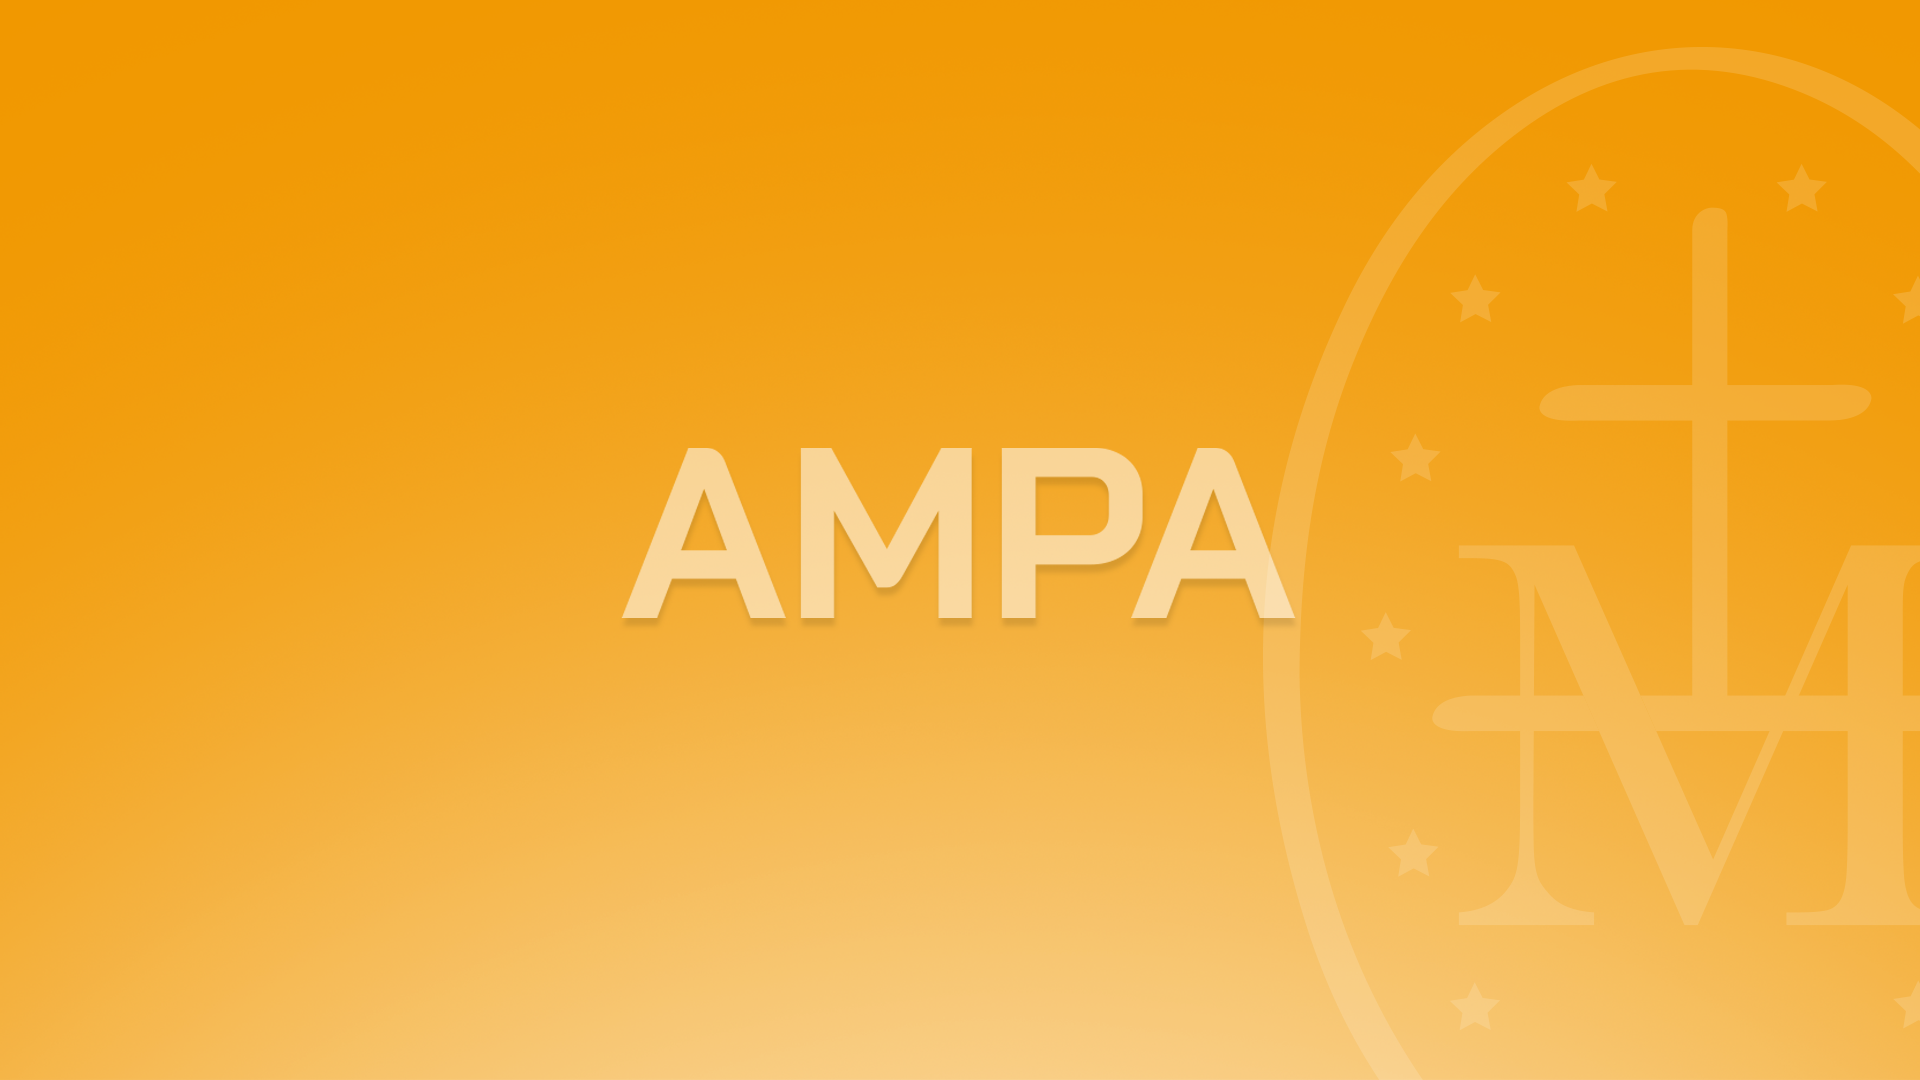 Bienvenidos a la sección del AMPA